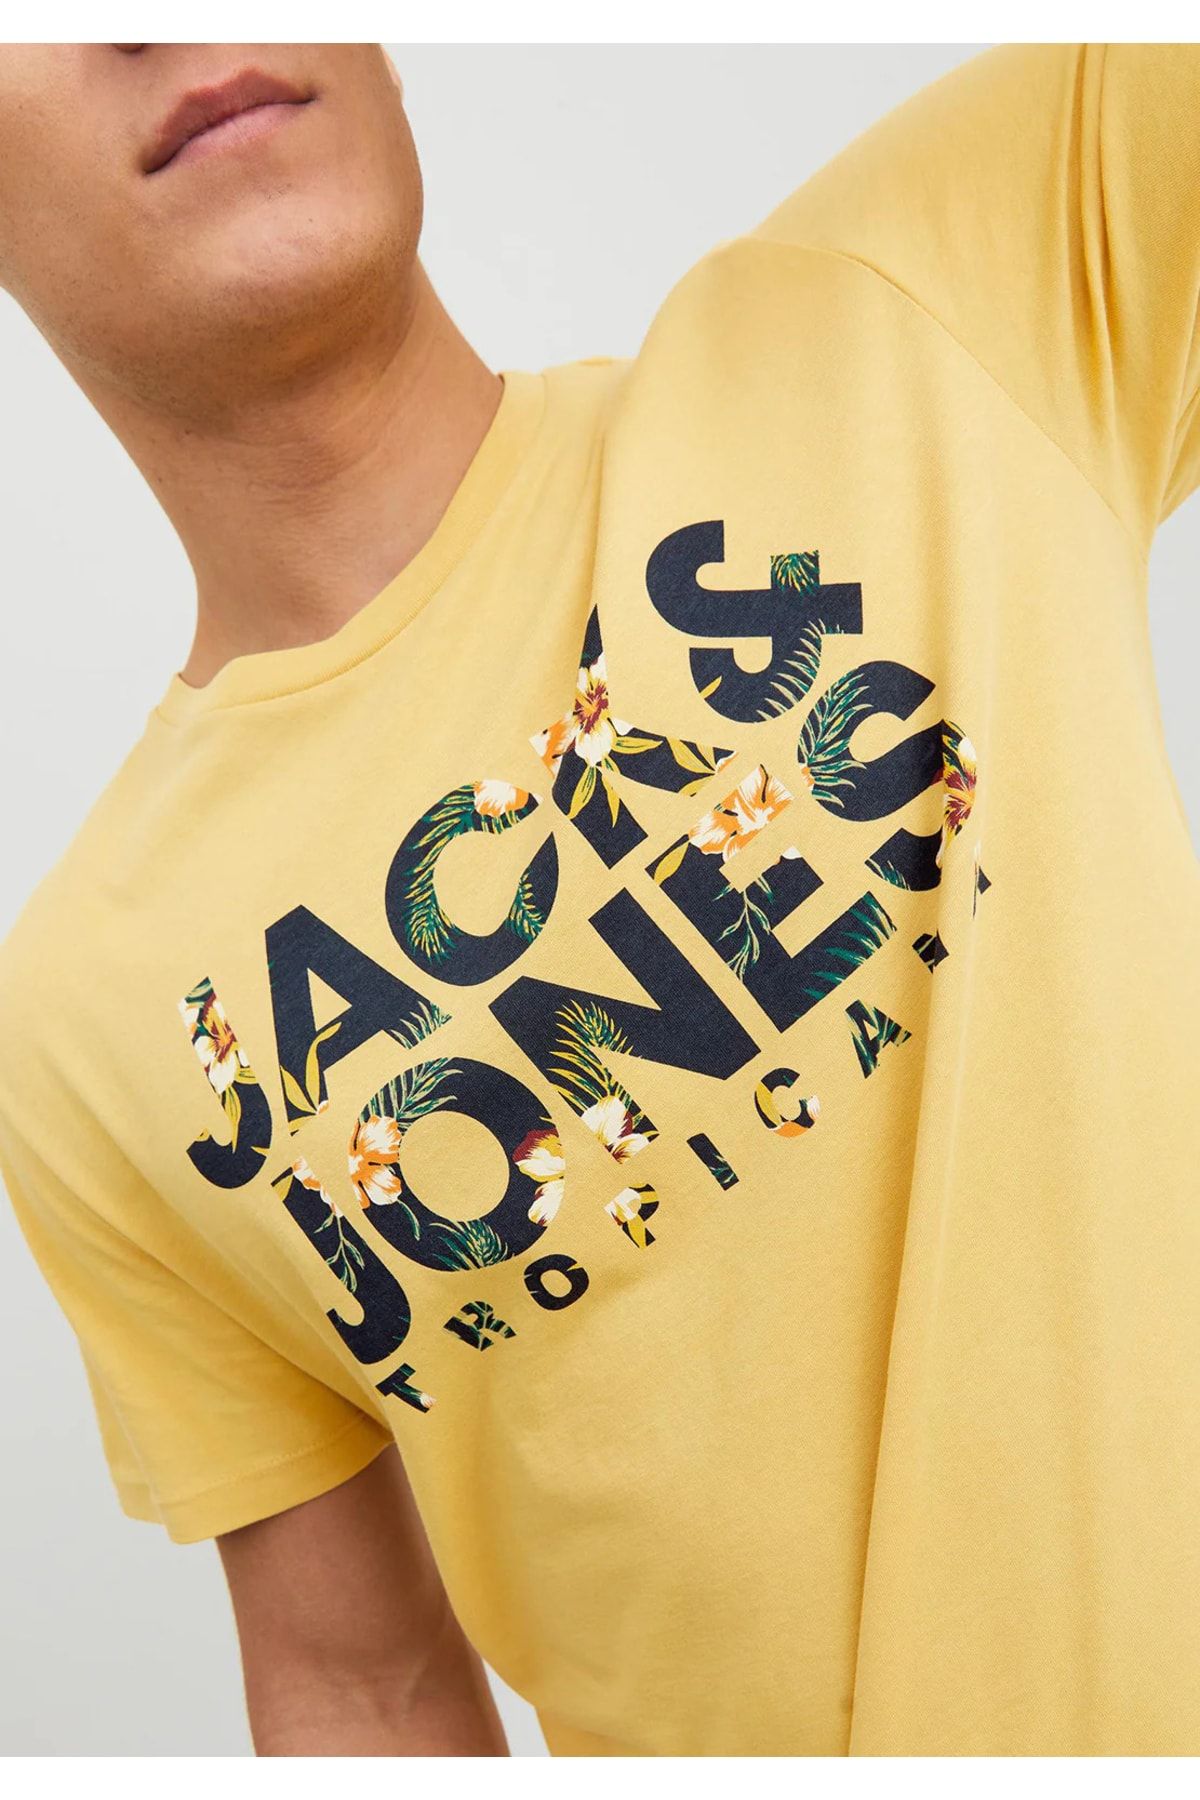 Jack & Jones Botanik Baskı Erkek T-shirt